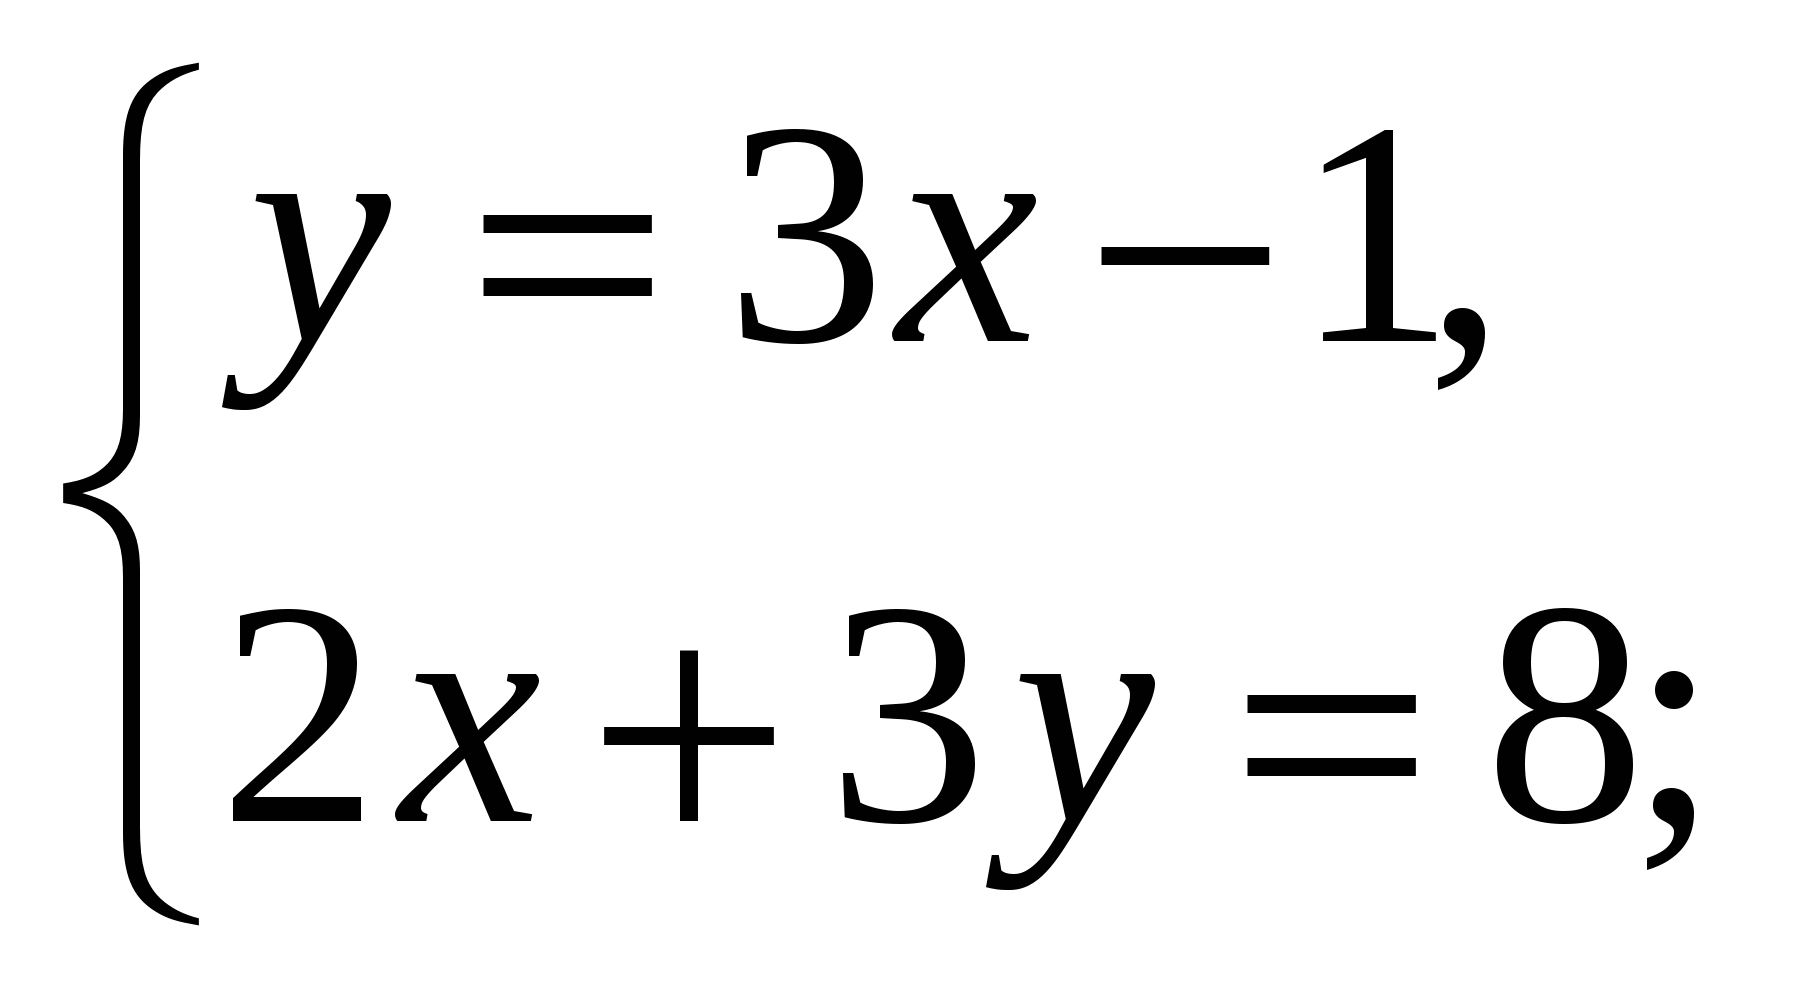 Конспект урока по алгебре 7 класс по теме Способы решения систем линейных уравнений.